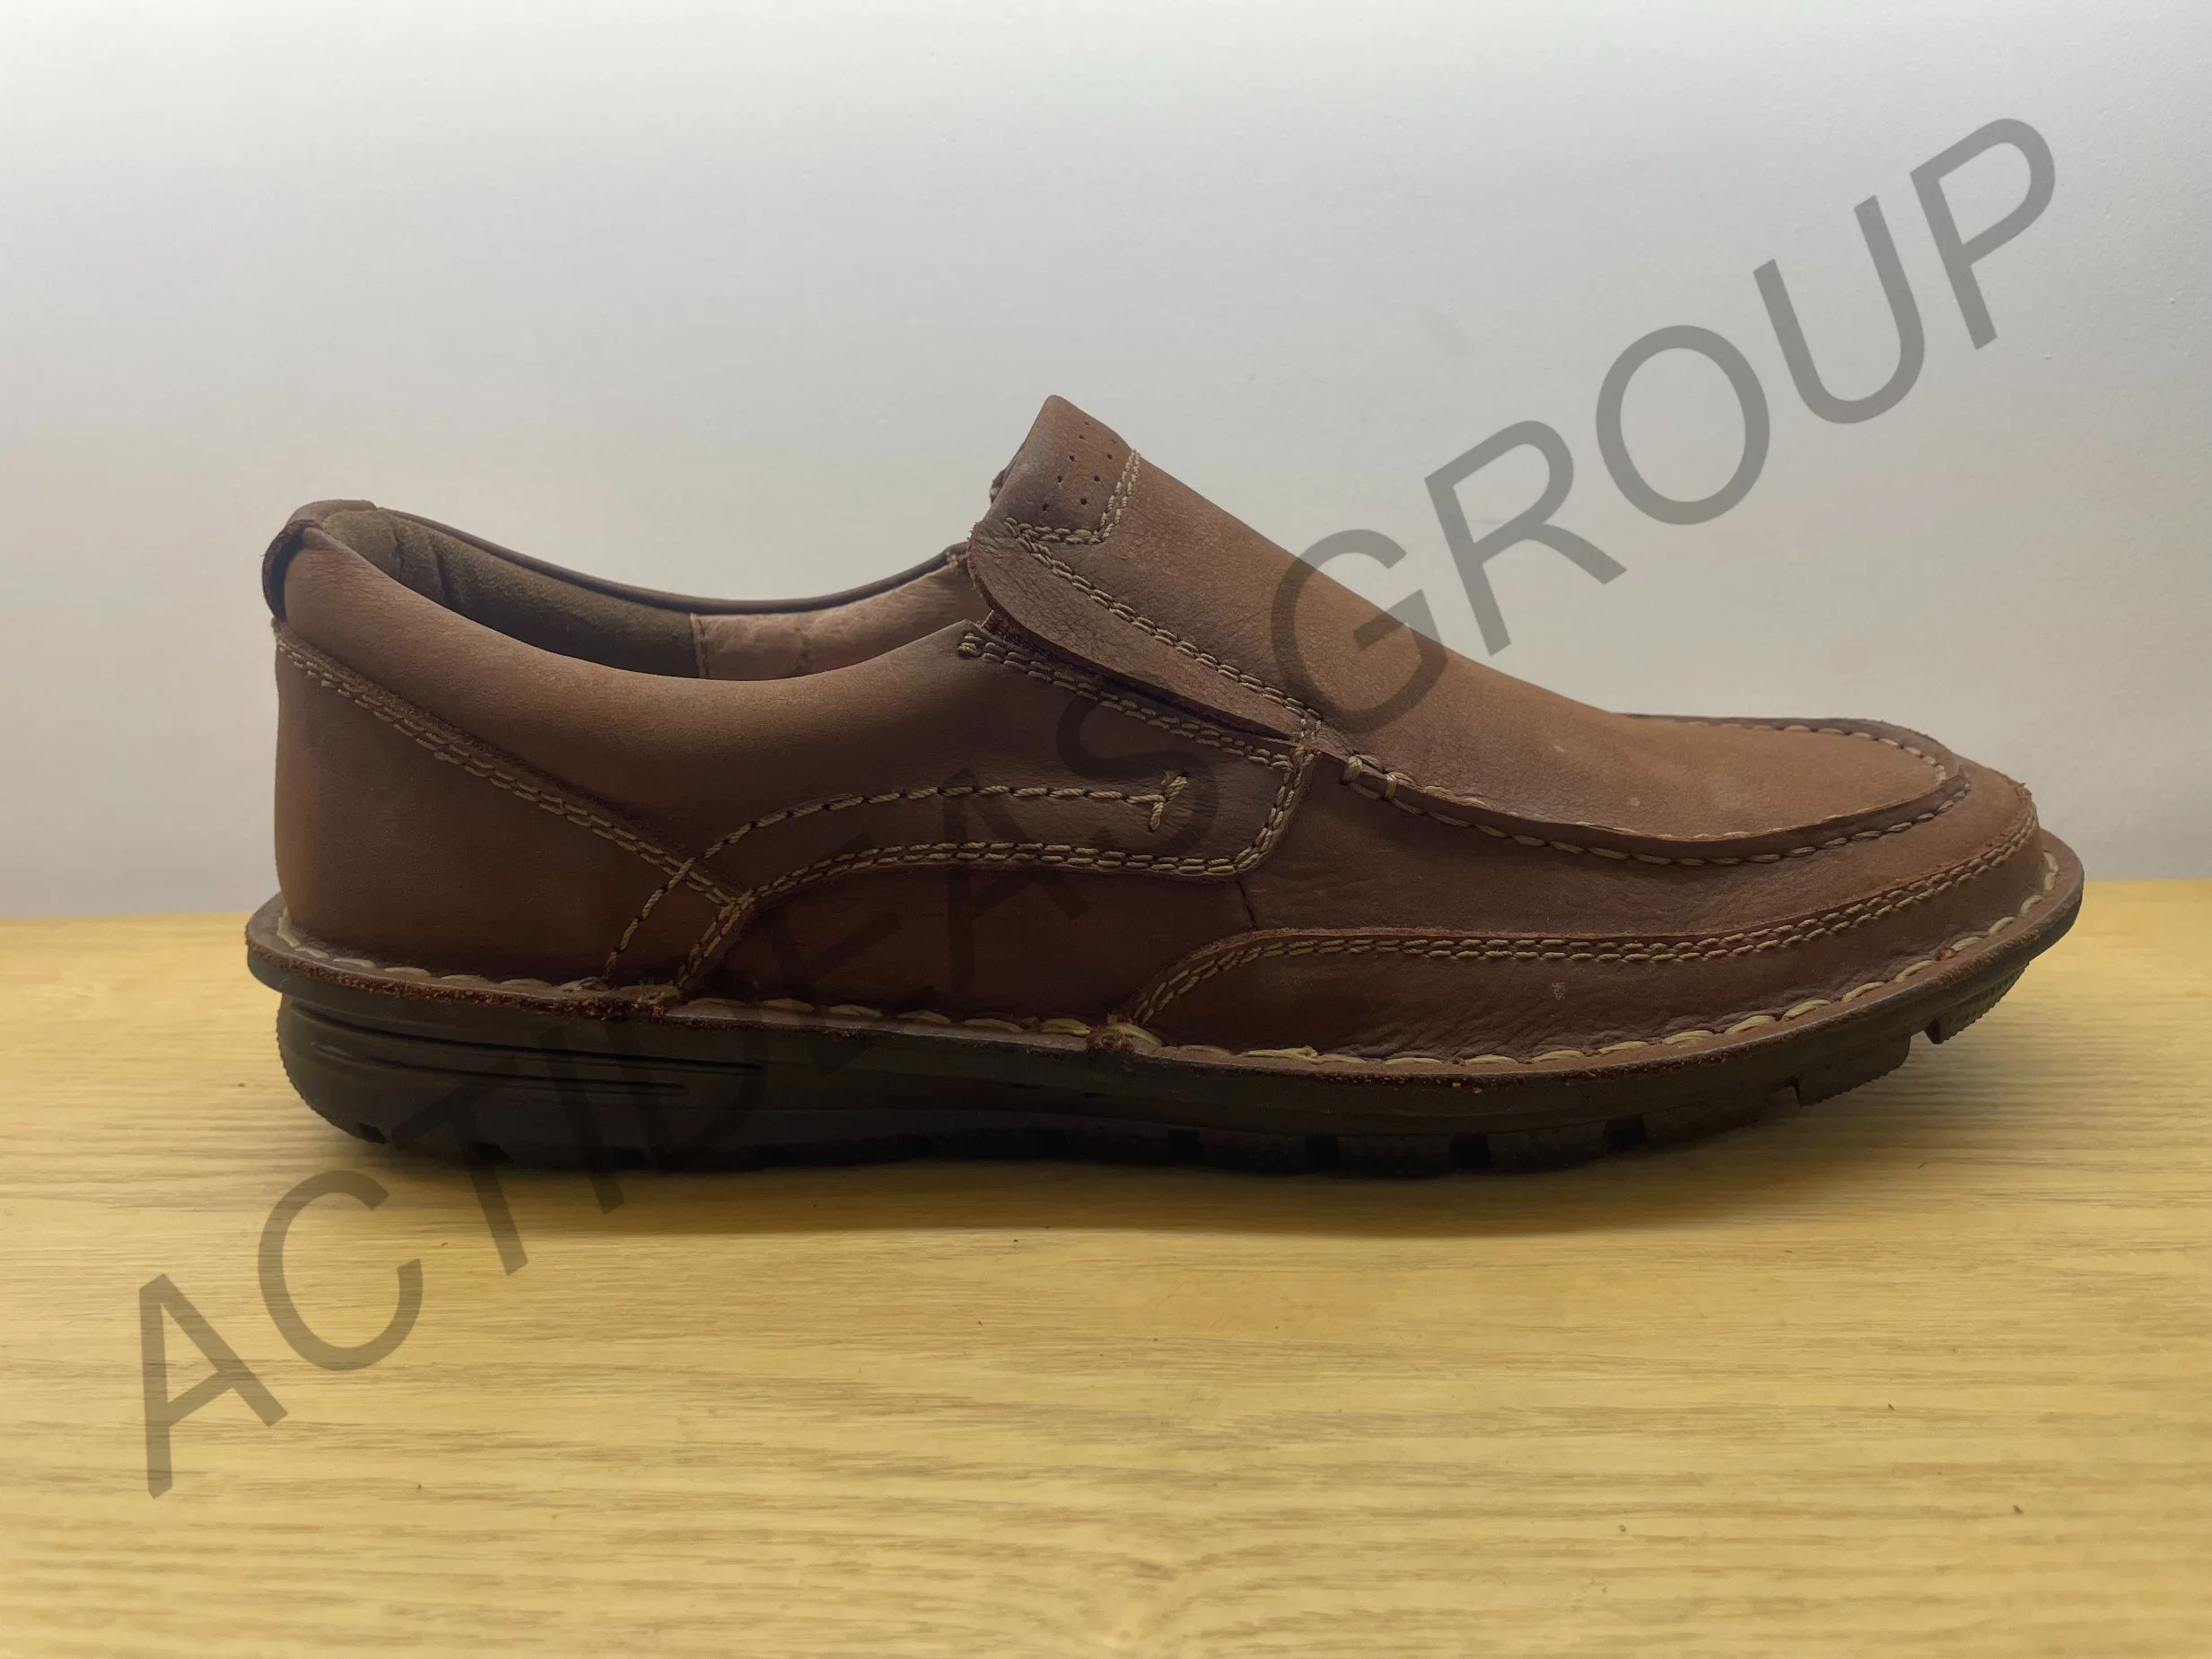 Slip on Fashion Runde Spitze Freizeit Loafers Leder Bootsschuhe Walking Style Schuhe für Männer Fahren Loafer billig